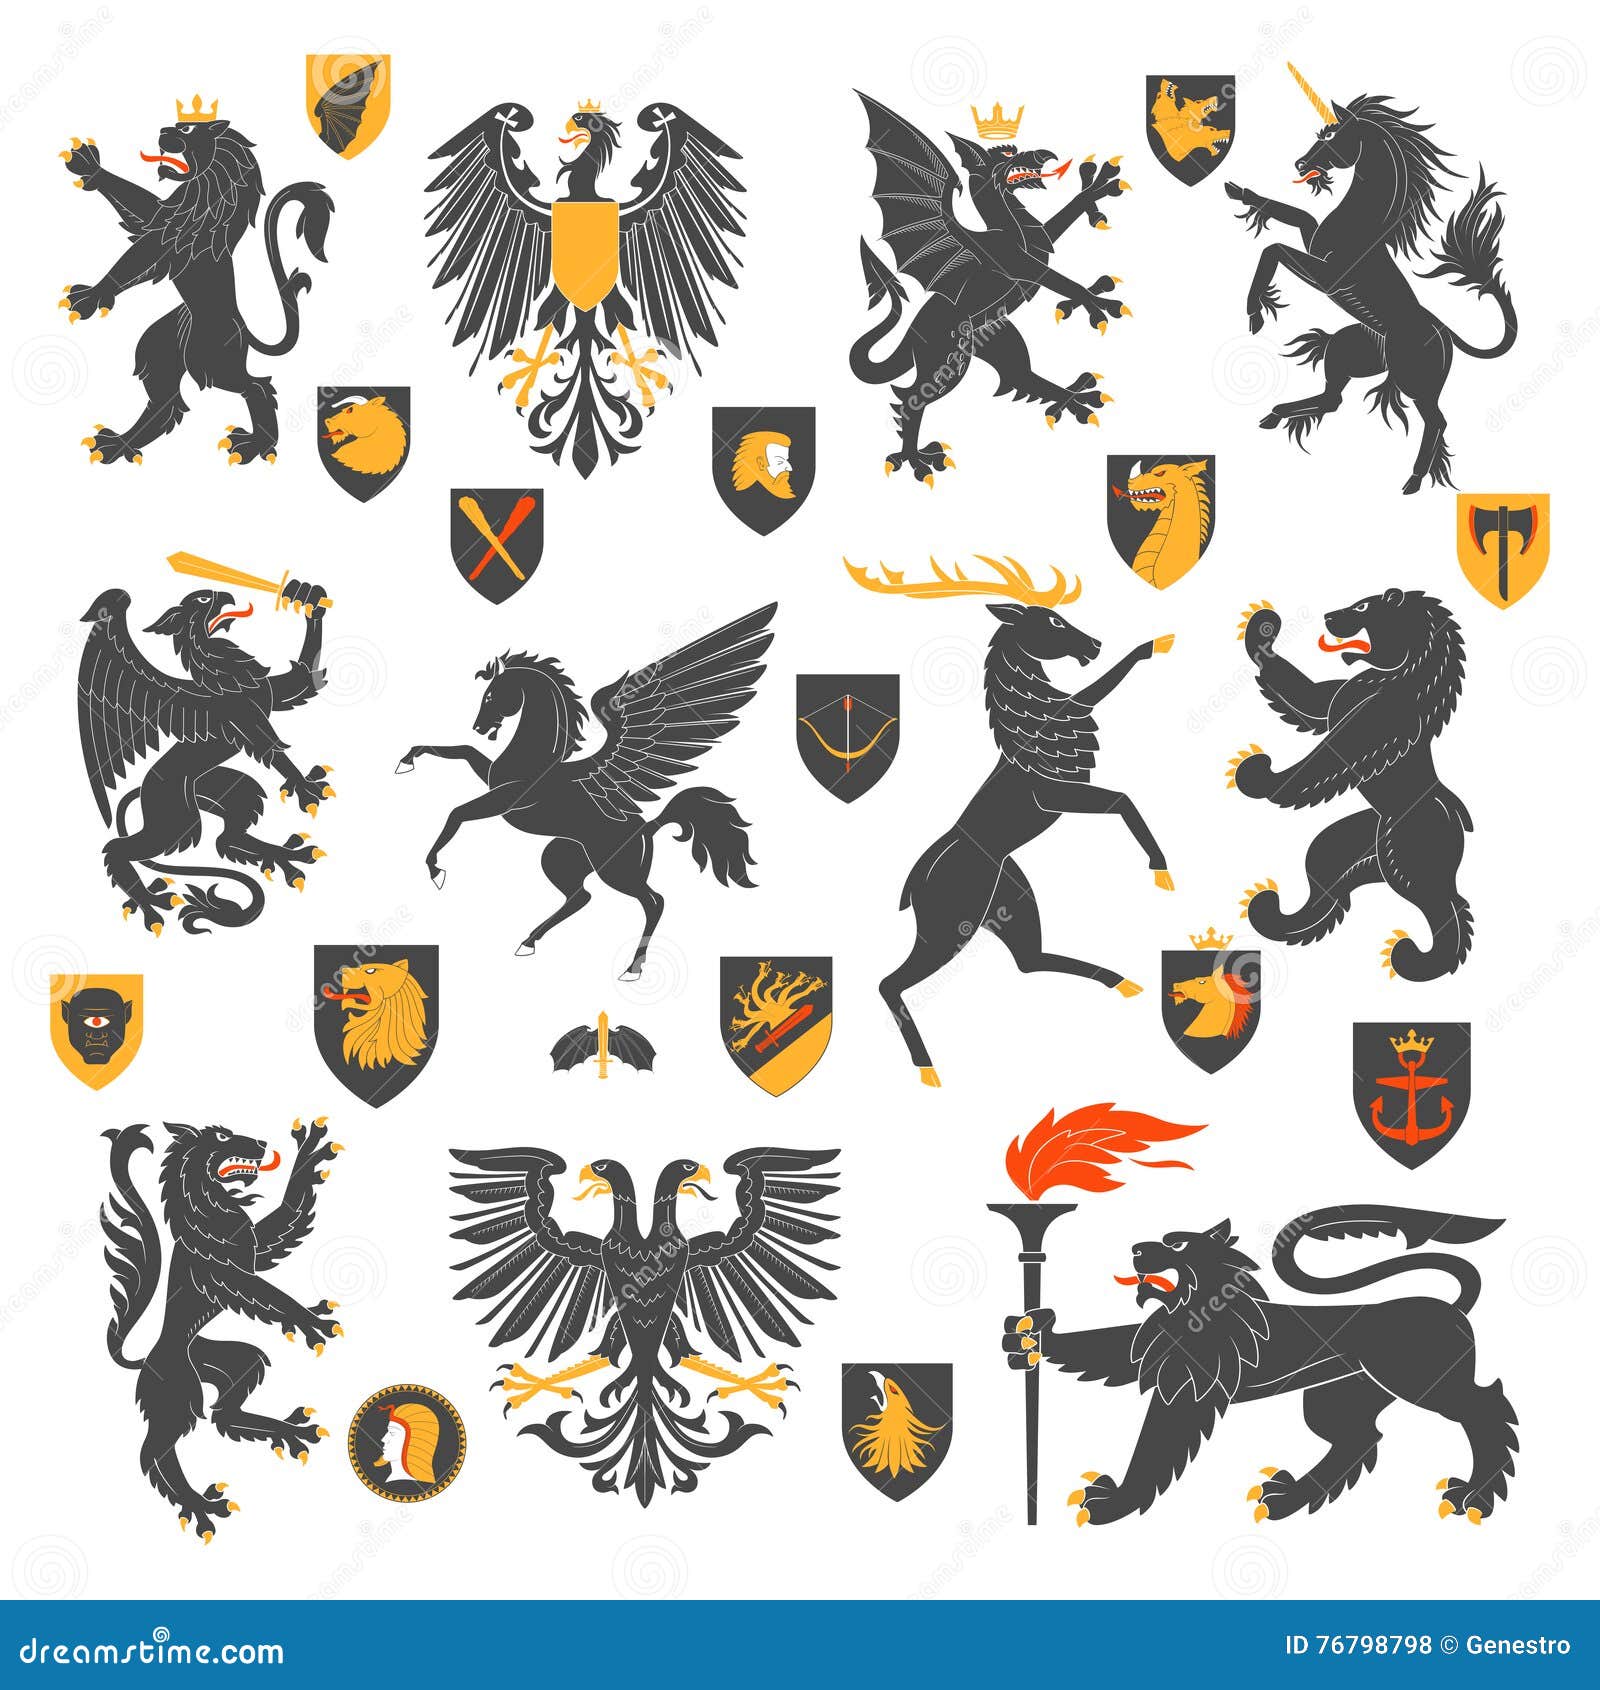 heraldic animals and s